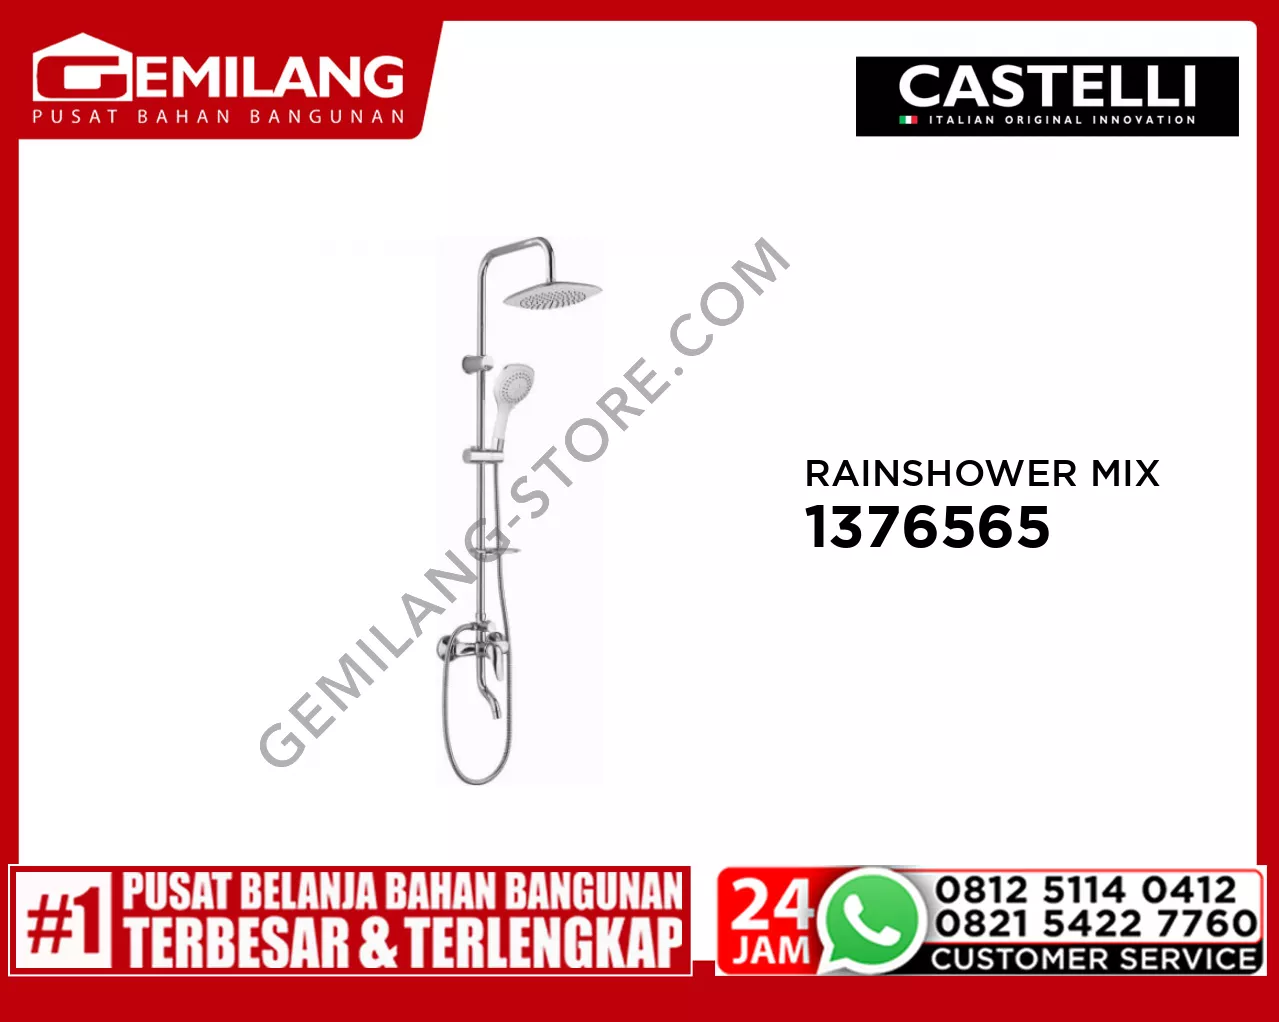 CASTELLI SINGLE HANDLE RAINSHOWER MIXER SET WITH SPOUT 1376565